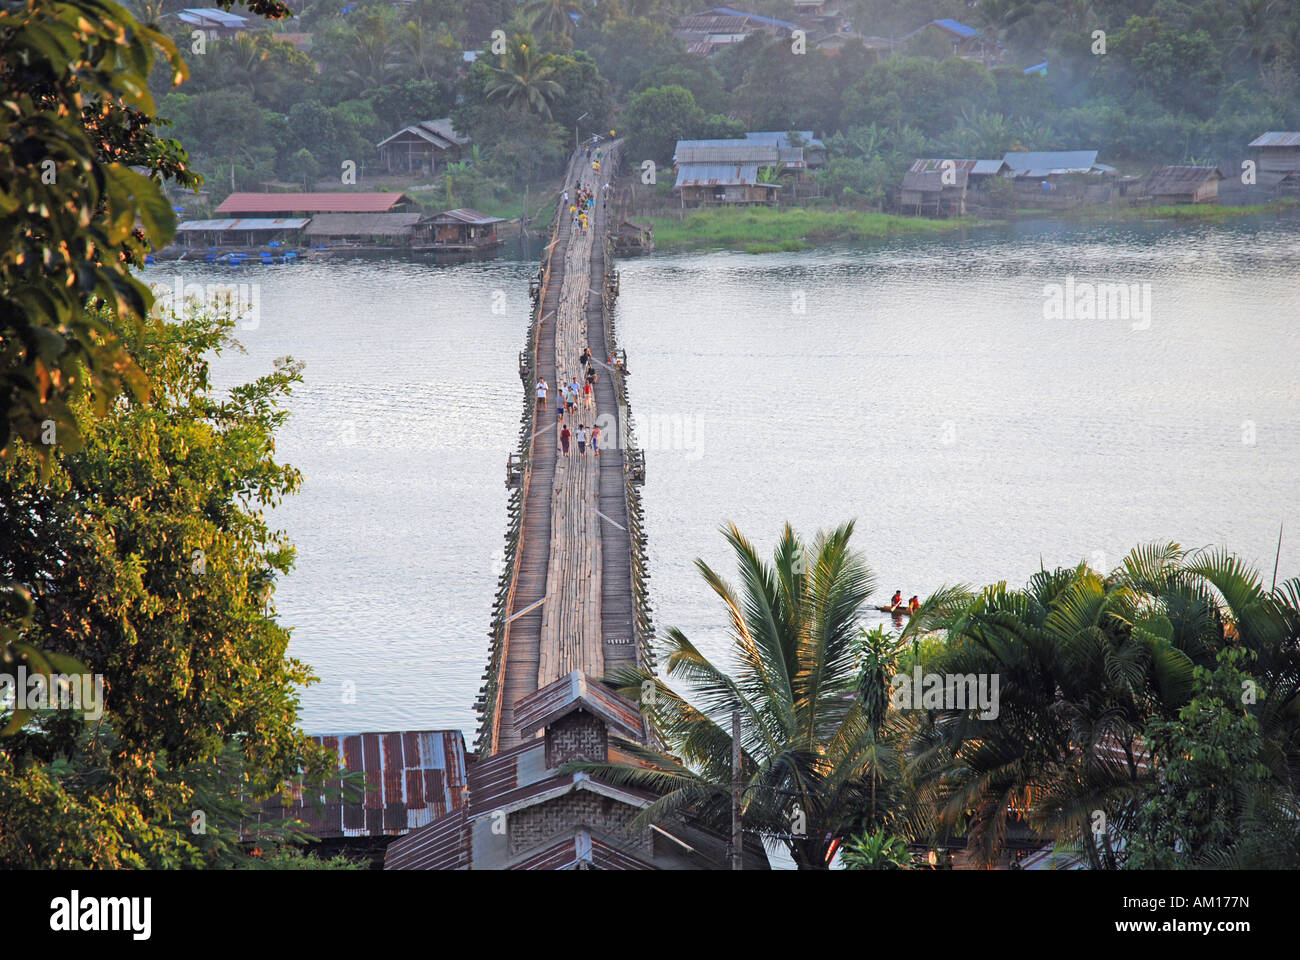 Uttamanusorn (Mon Bridge), Sanklaburi to Waeng Khan, the longest wooden bridge in Thailand, Asia Stock Photo